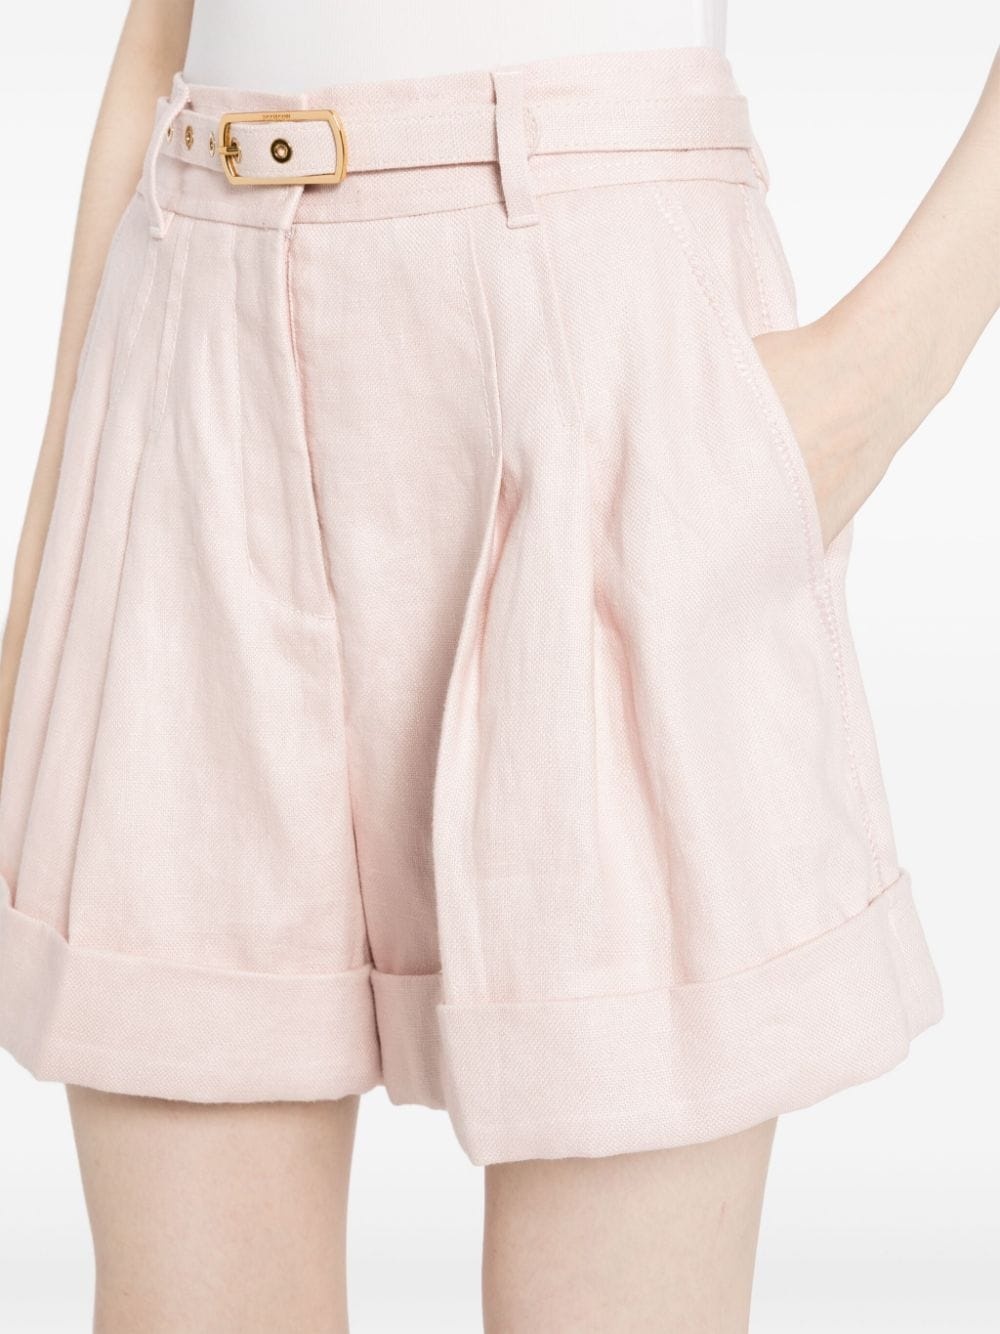 Matchmaker linen shorts - 5